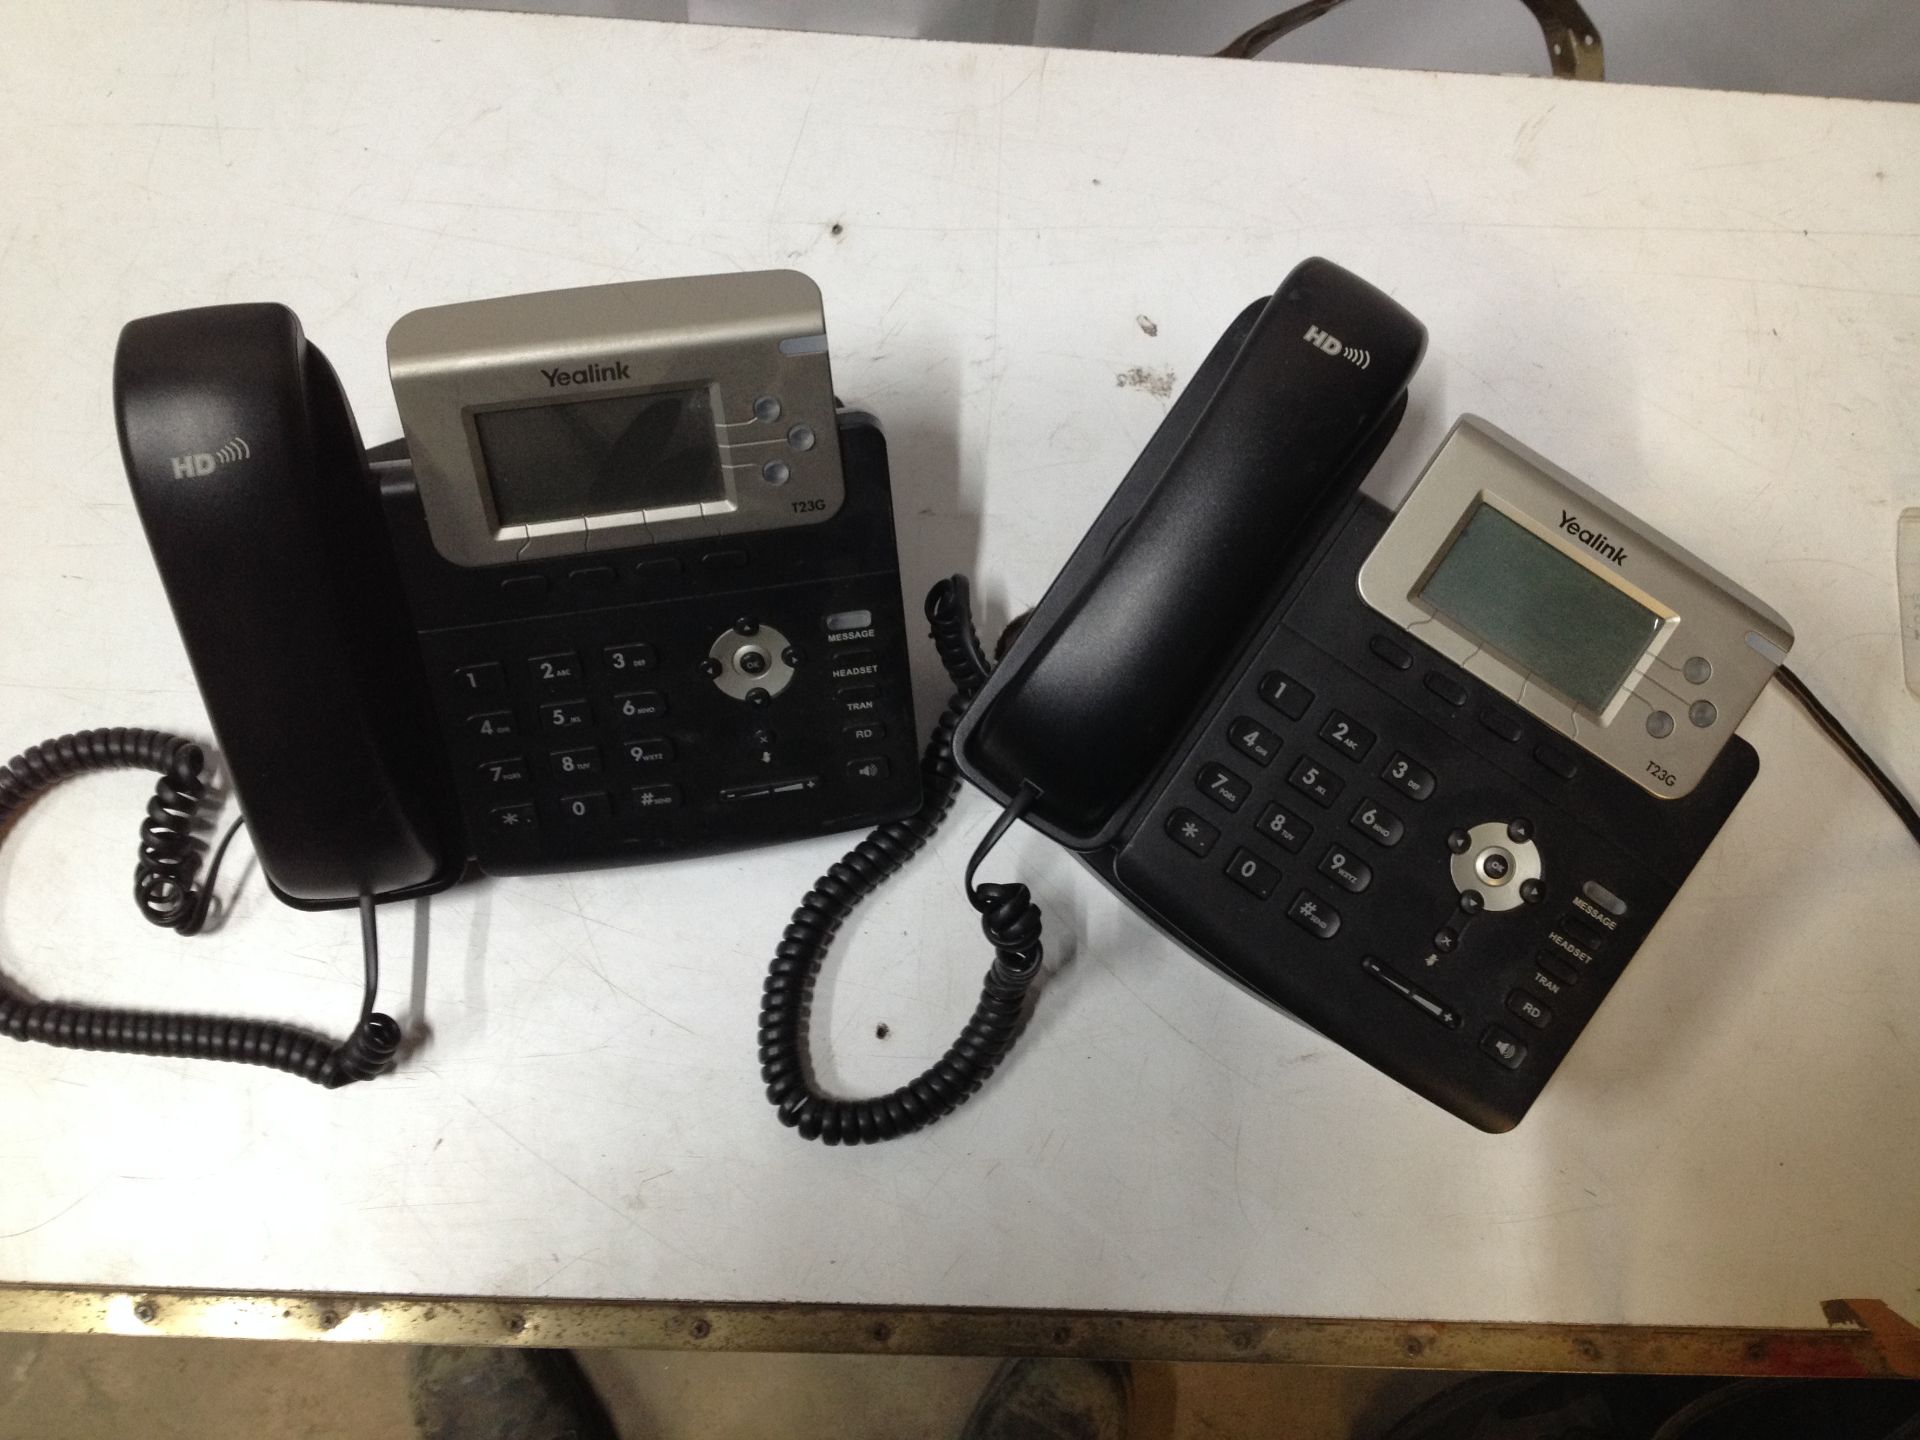 2 x Yealink T23G IP Telephones